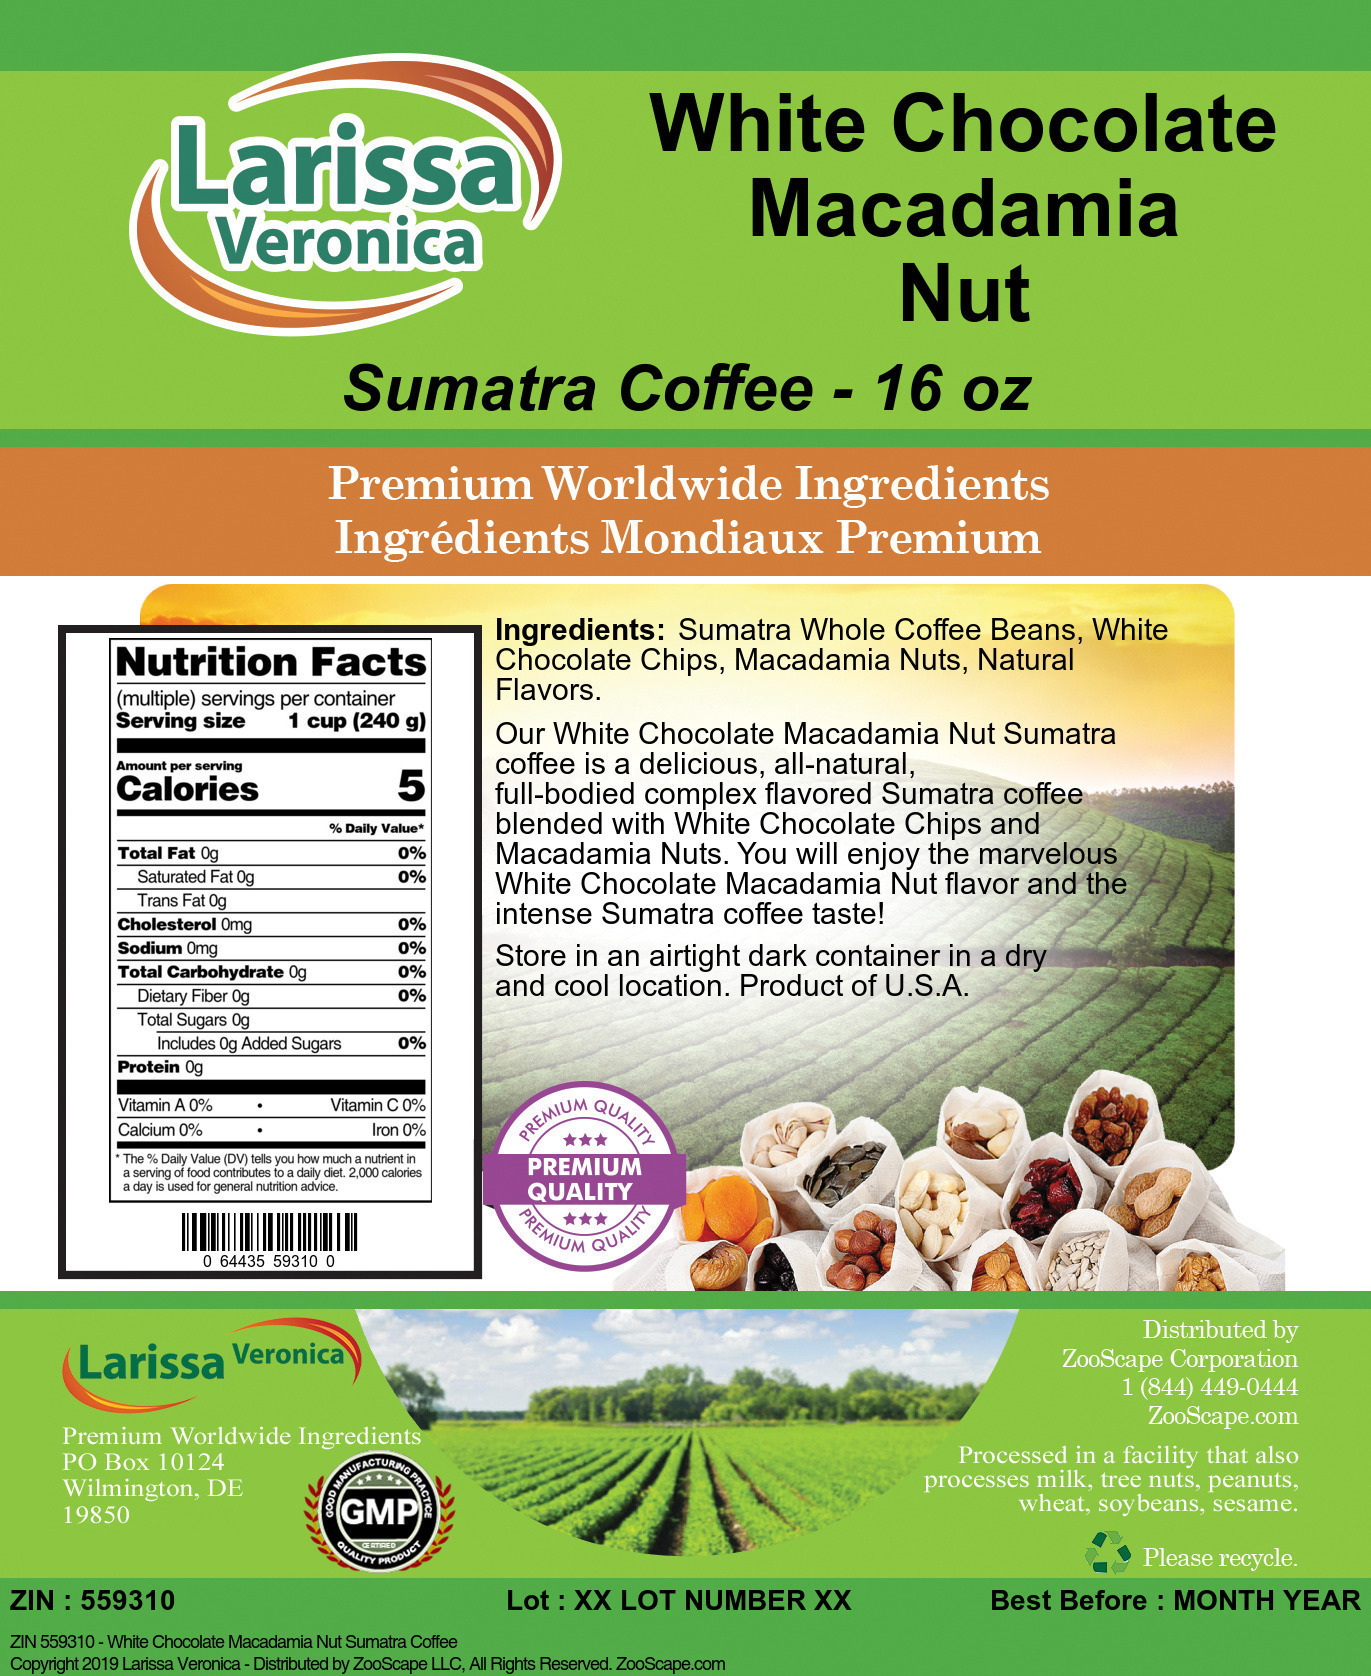 White Chocolate Macadamia Nut Sumatra Coffee - Label